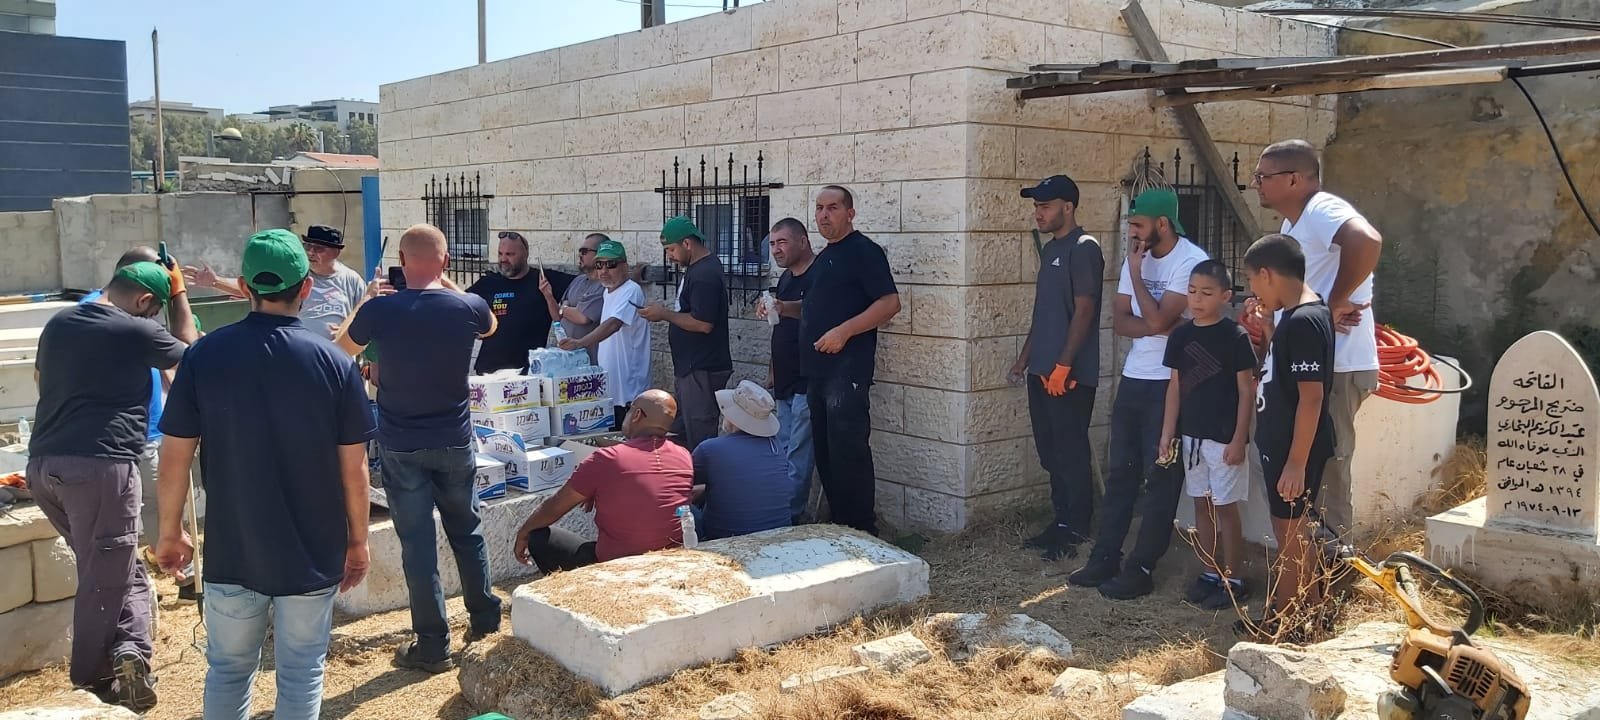 يافا: بالصور الحركة الإسلامية تنظم معسكر عمل لتنظيف مقبرة الكزخانة-0